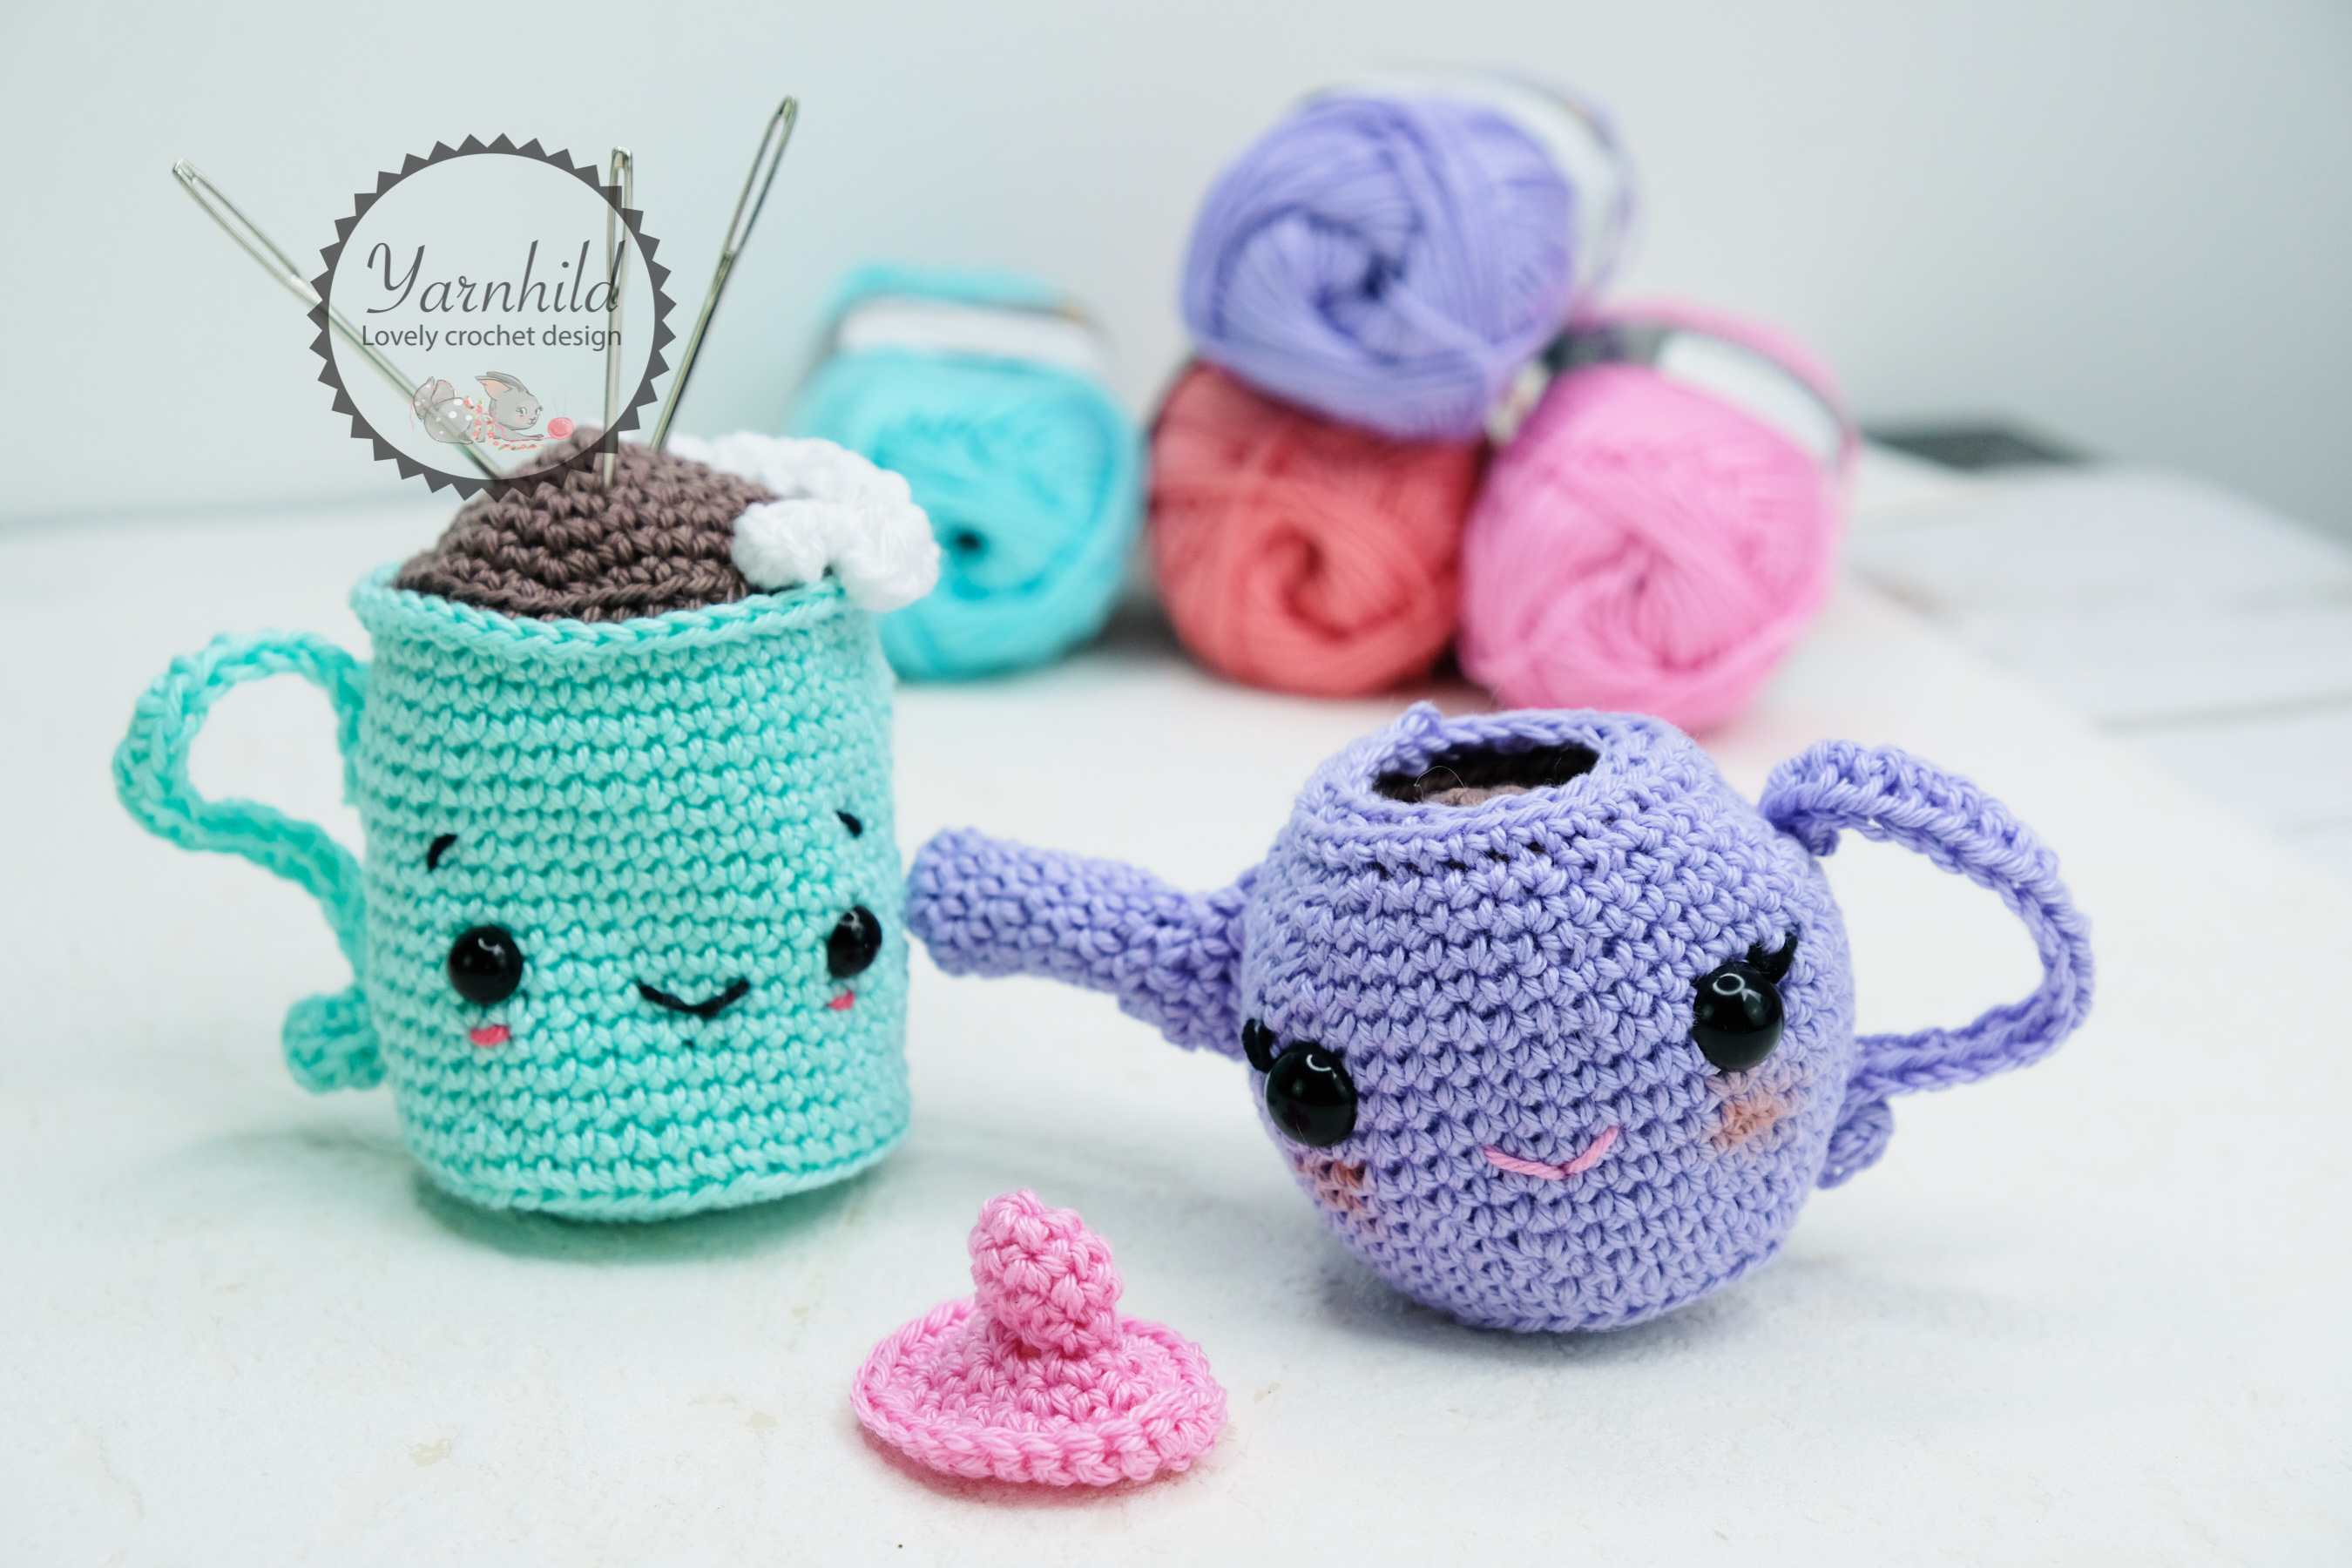 Crochet tea party set